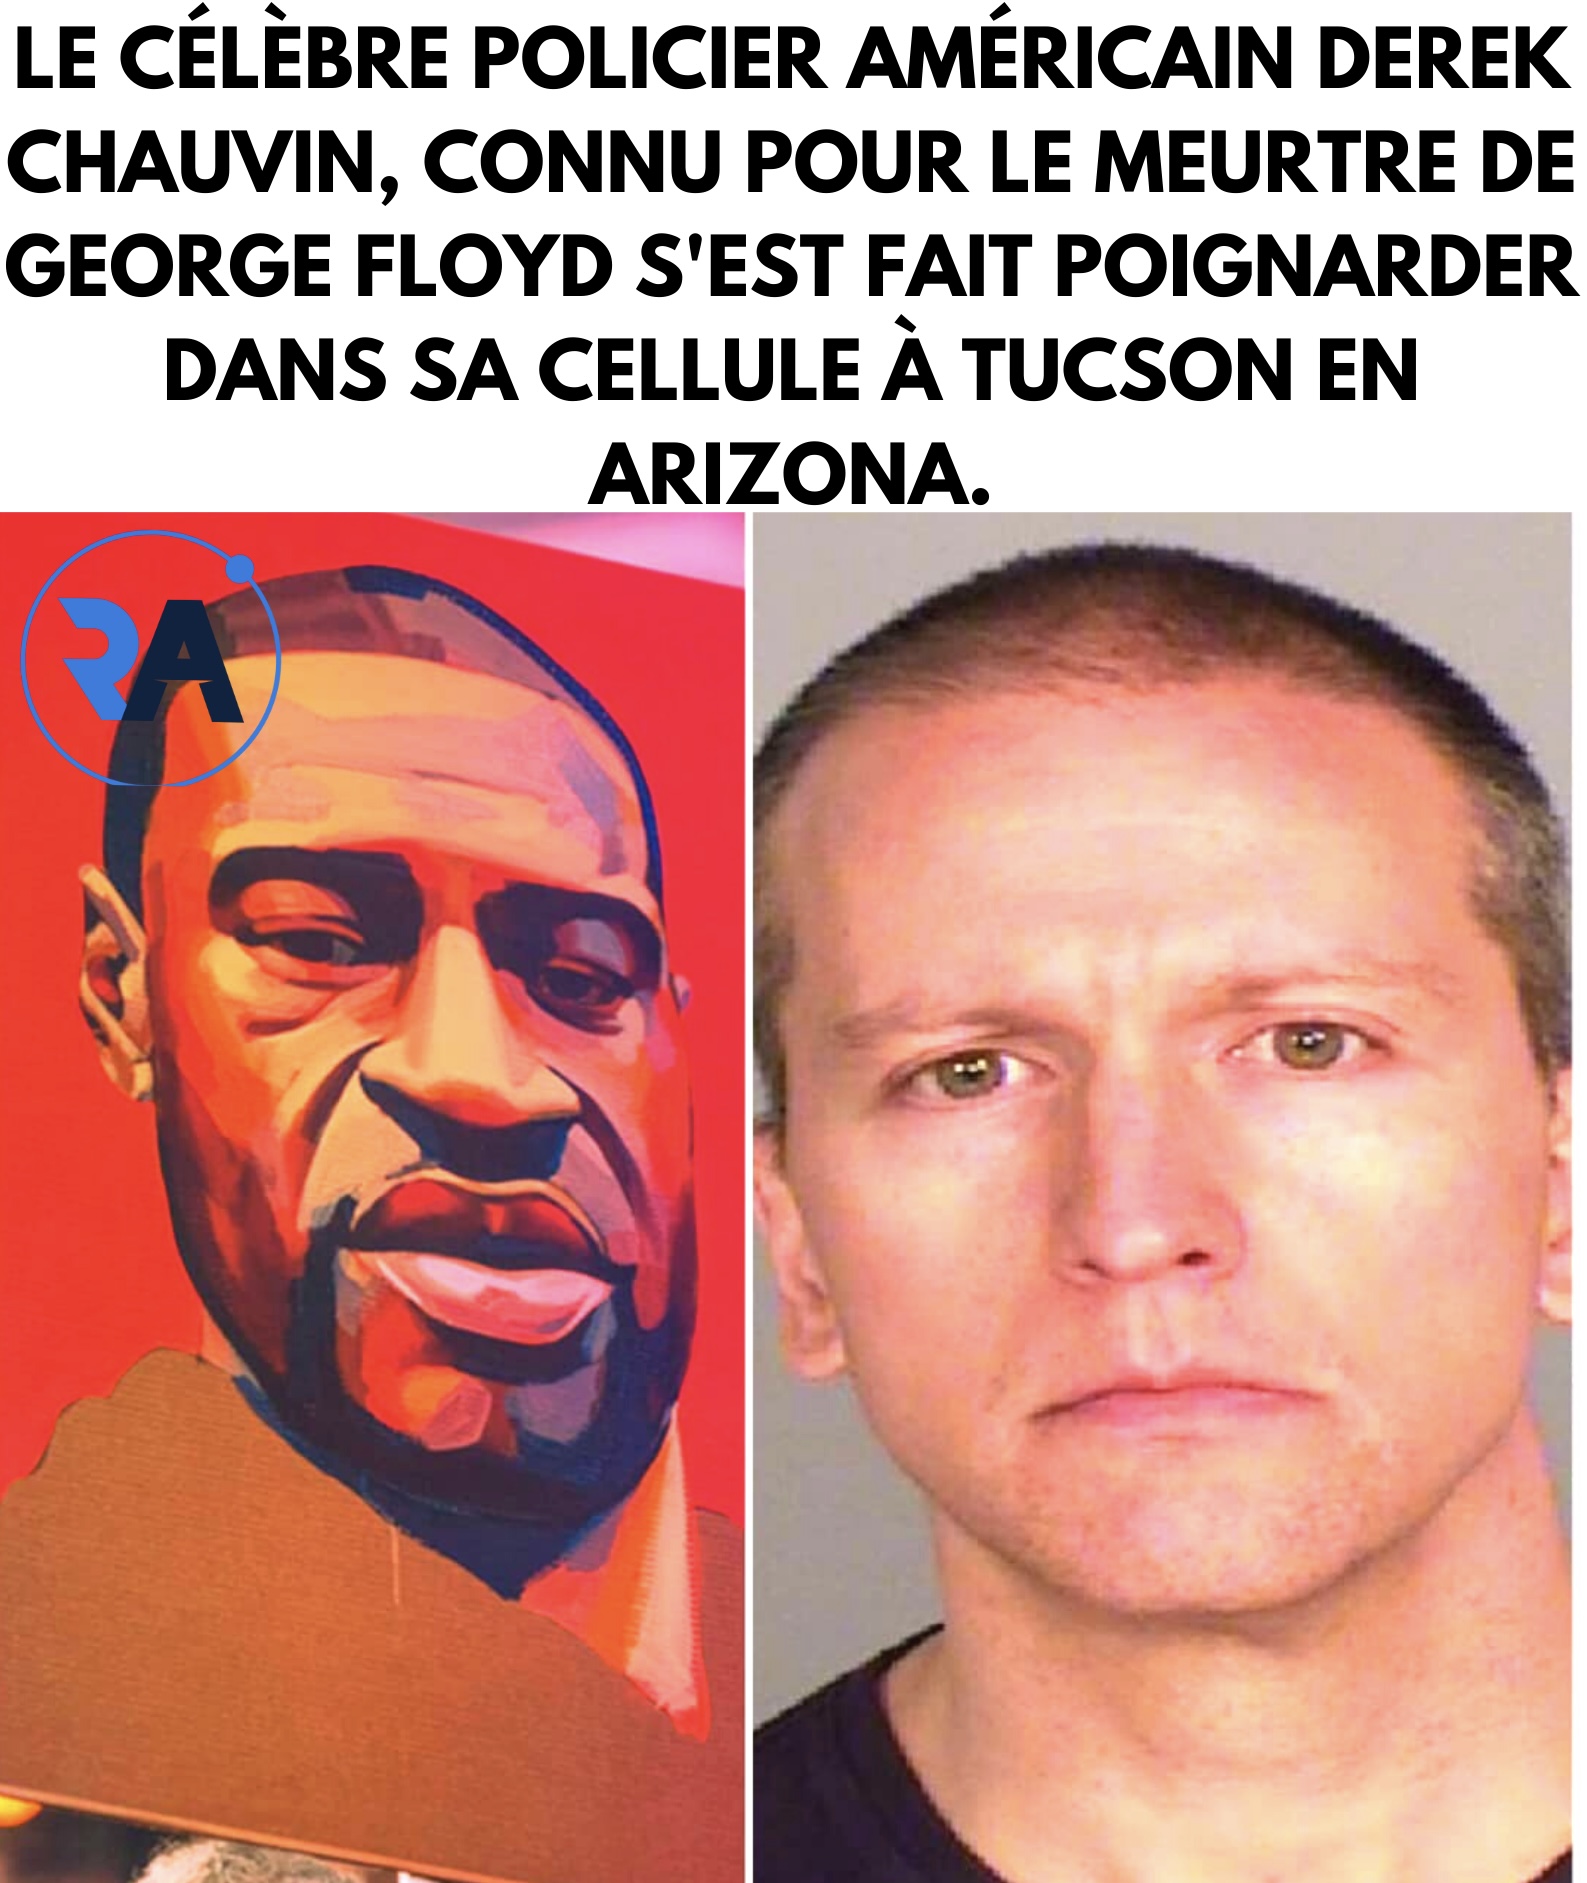 Le célèbre policier américain Derek Chauvin, connu pour le meurtre de George Floyd s'est fait poignarder dans sa cellule à Tucson en Arizona.